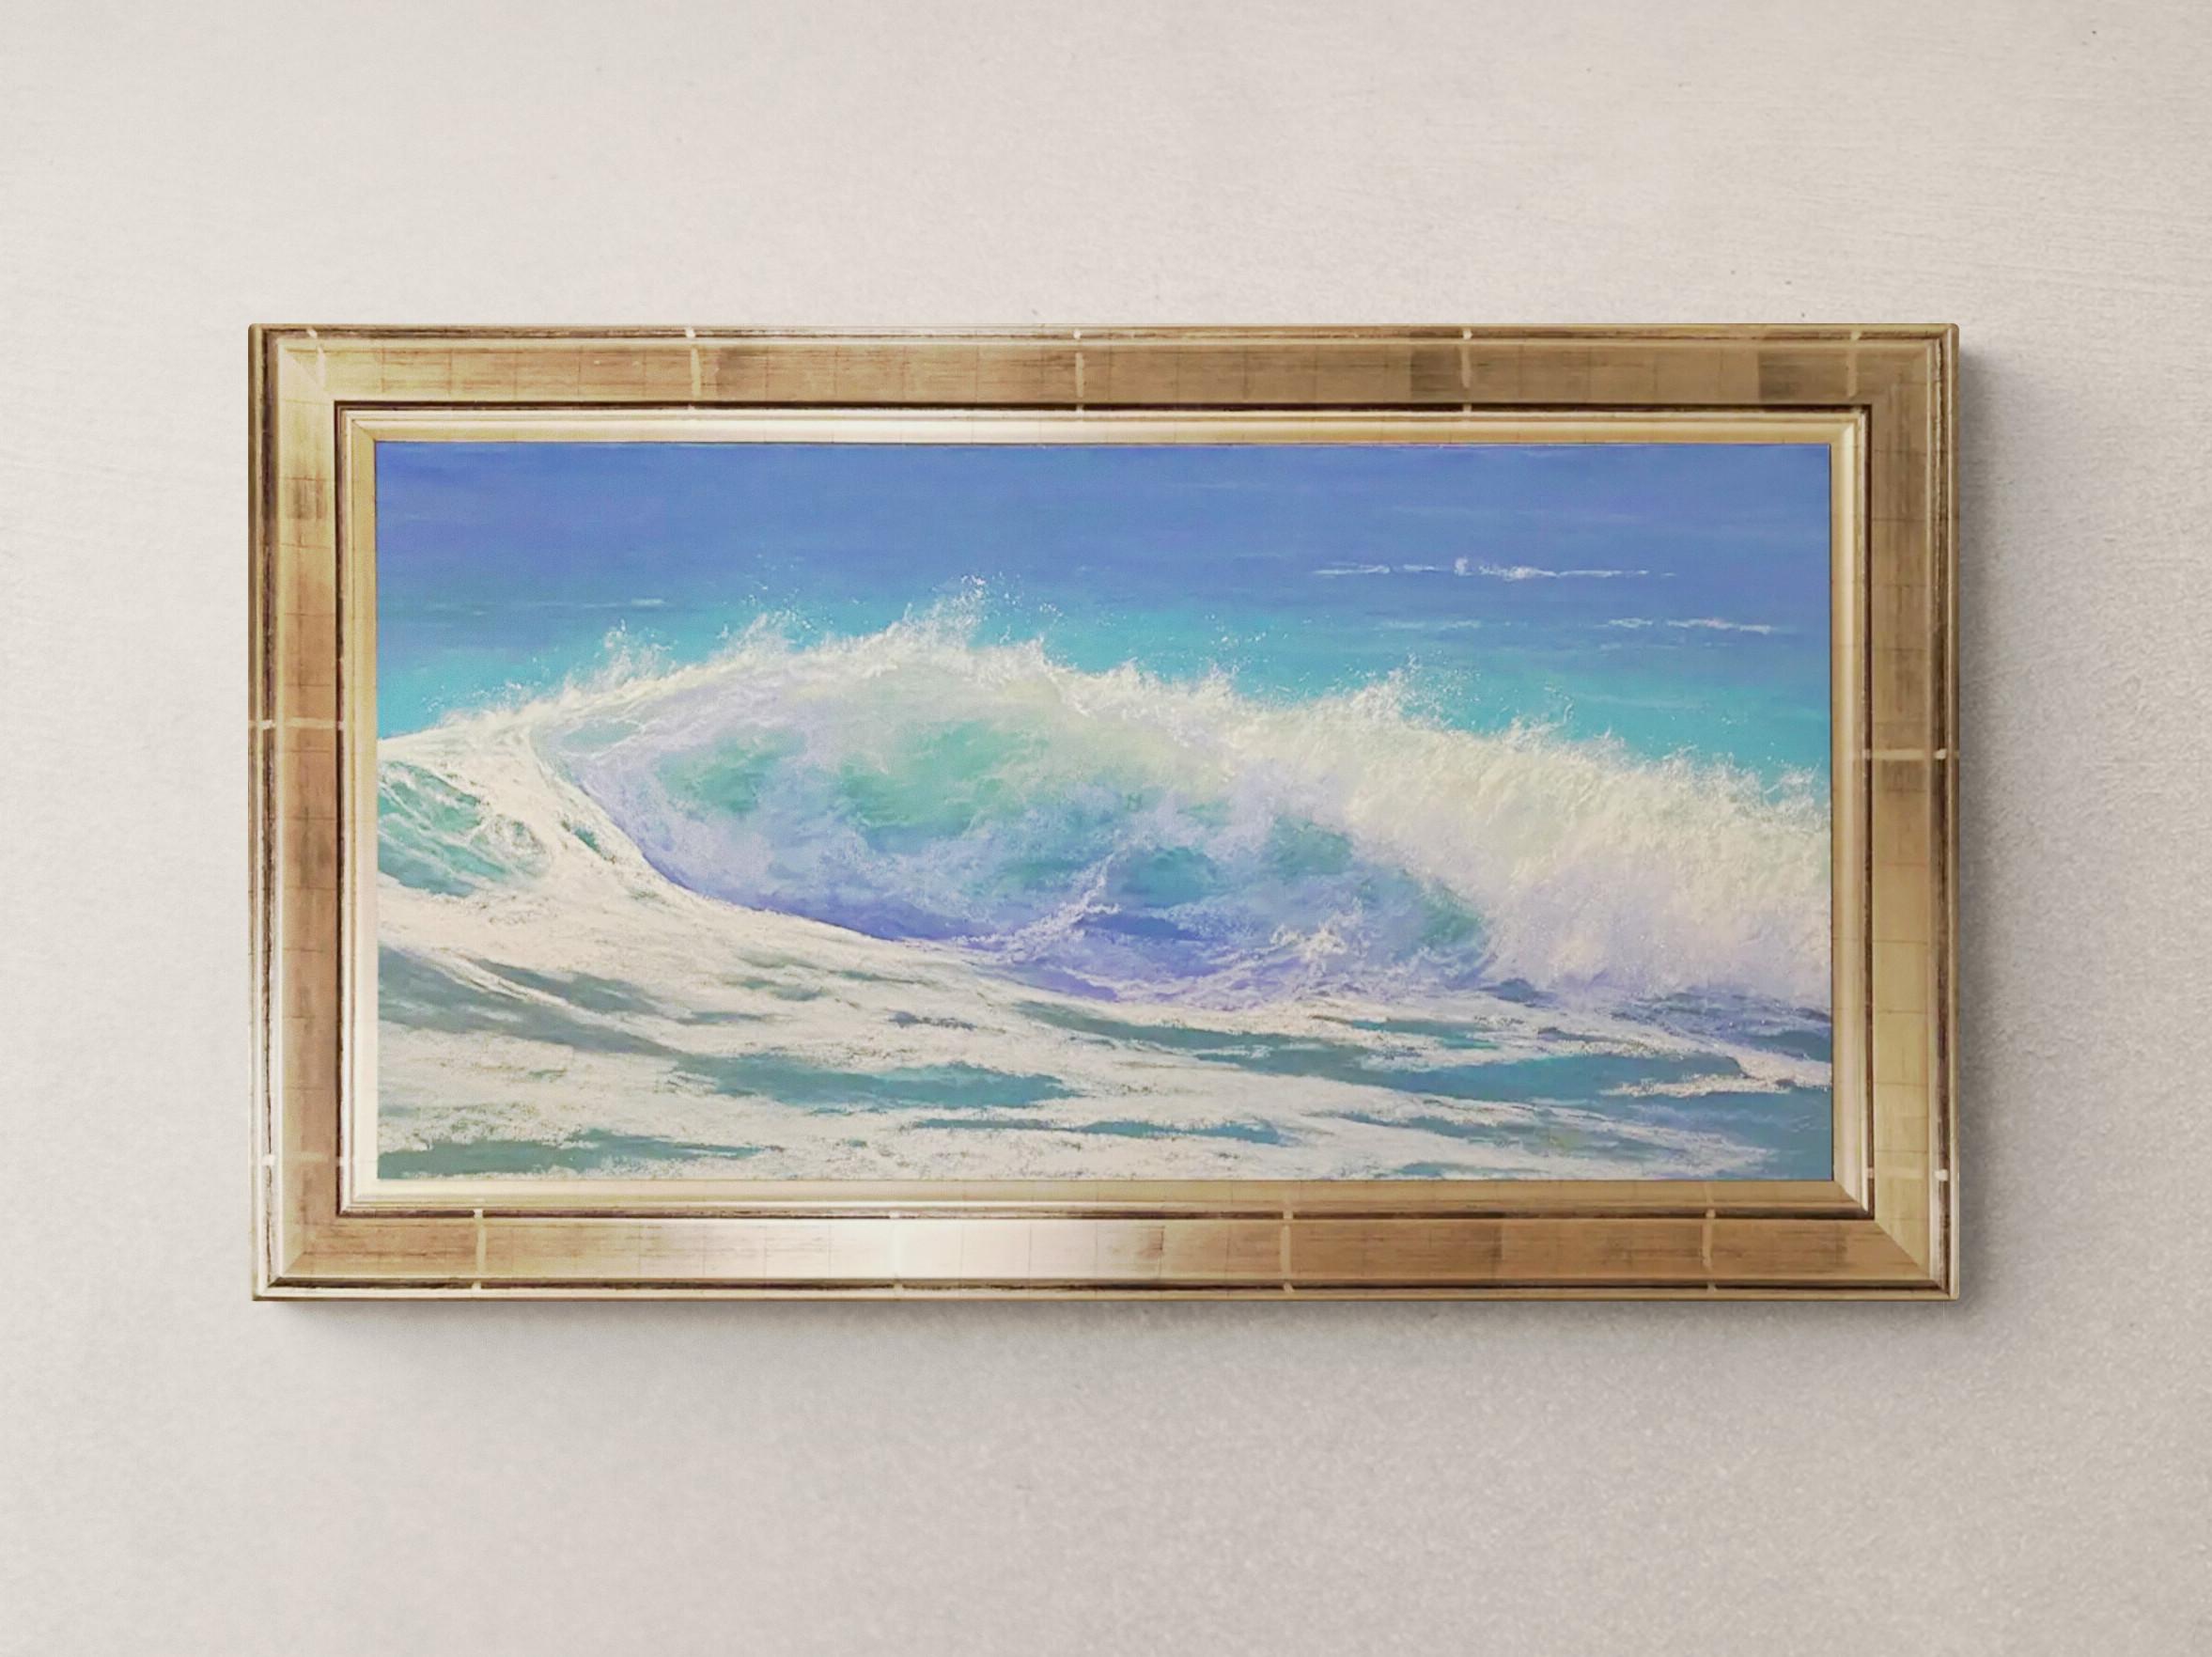 Warmes Wasser, gerahmtes Original eines zeitgenössischen impressionistischen Gemäldes mit Meerblick
12